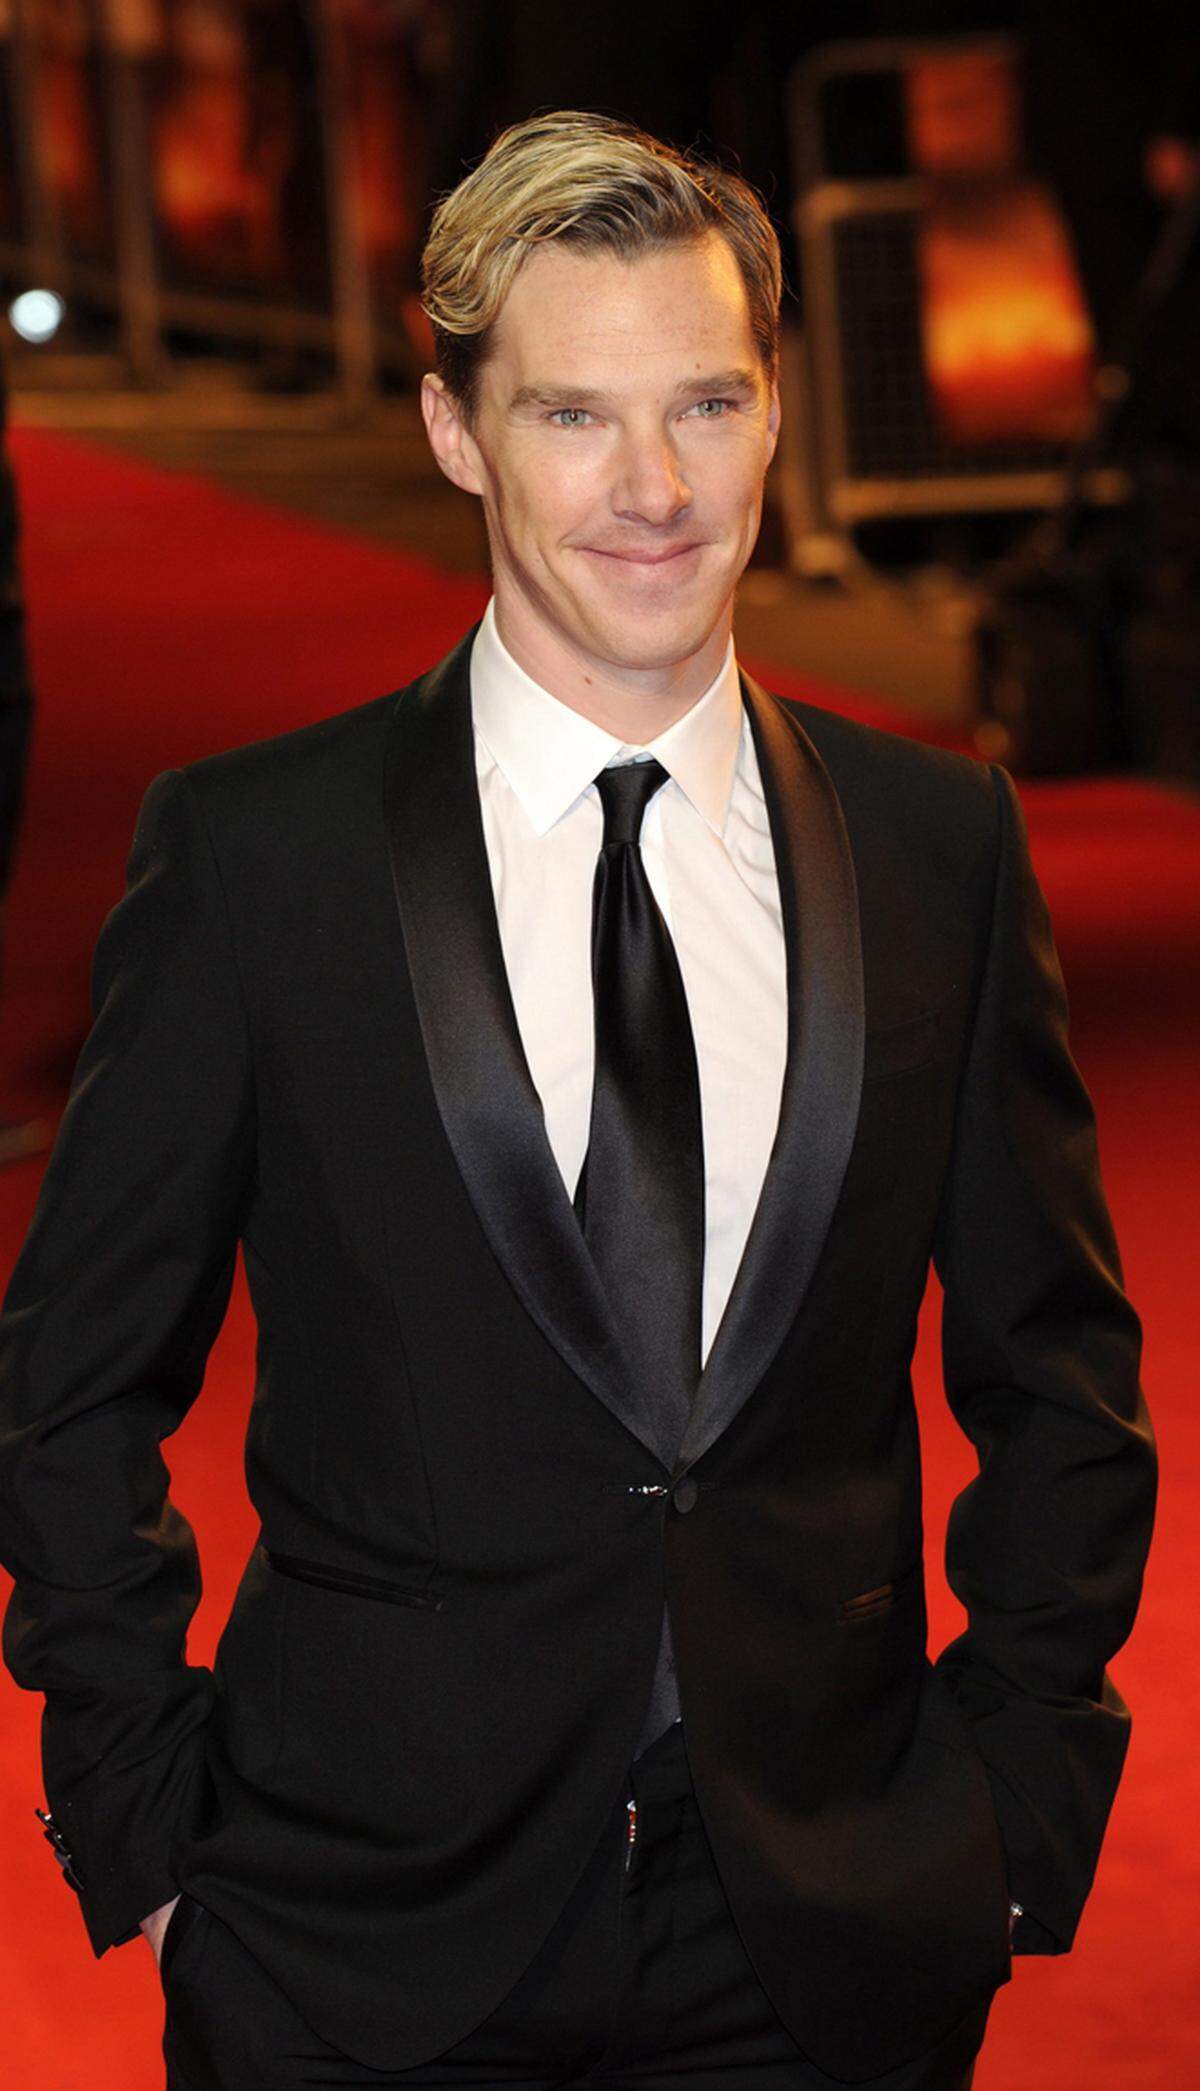 Der für seine Rolle als Sherlock Holmes bekannte TV-Star überzeugt auf dem roten Teppich.